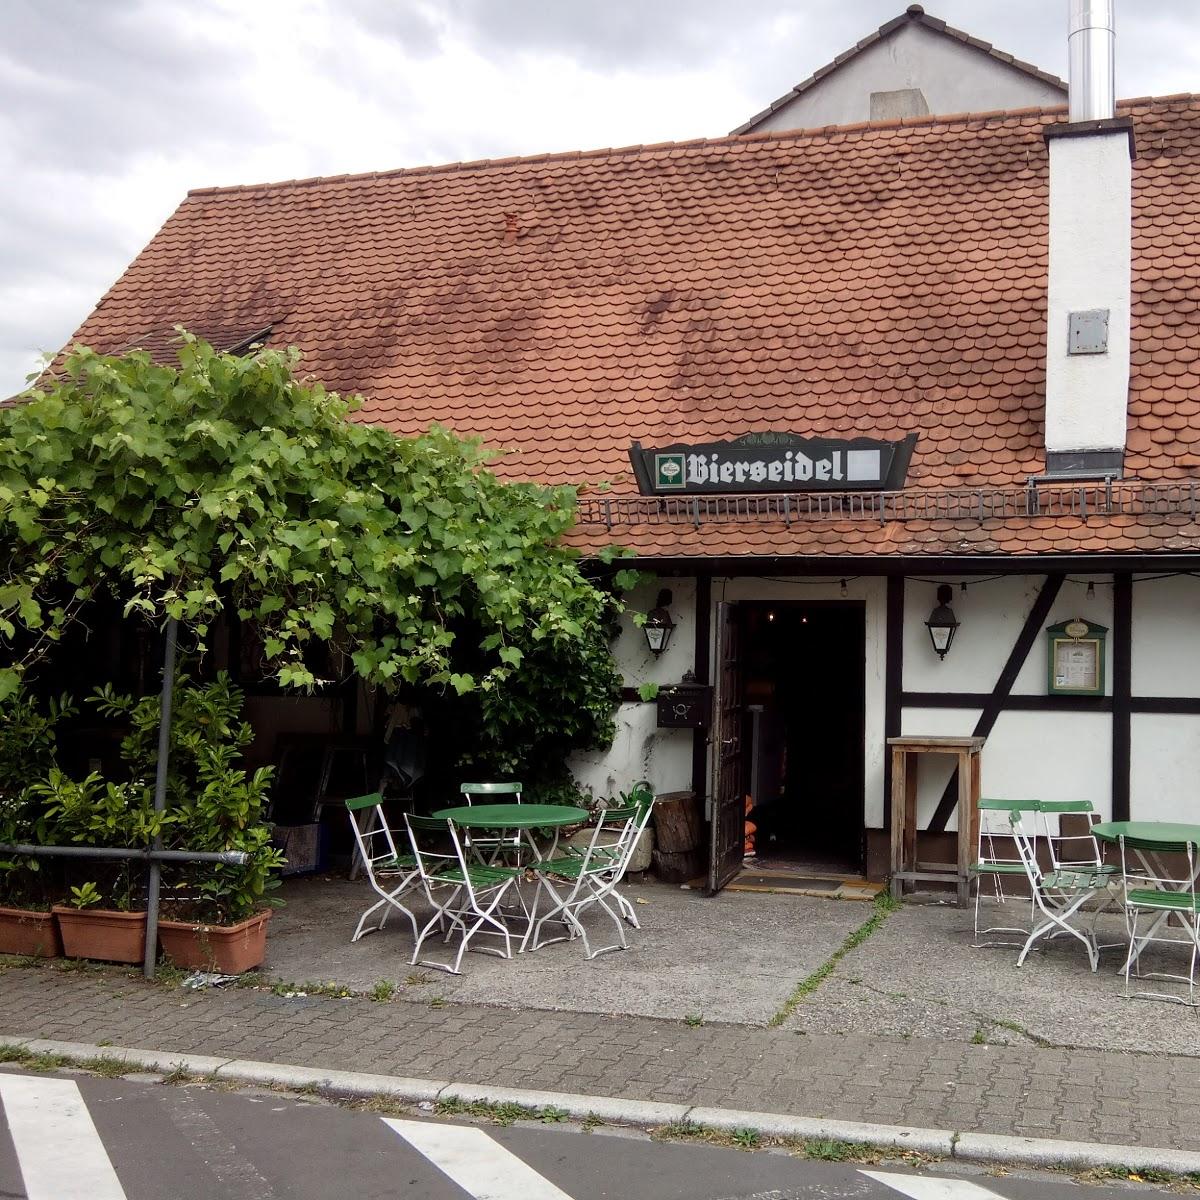 Restaurant "Bierseidel" in Altlußheim